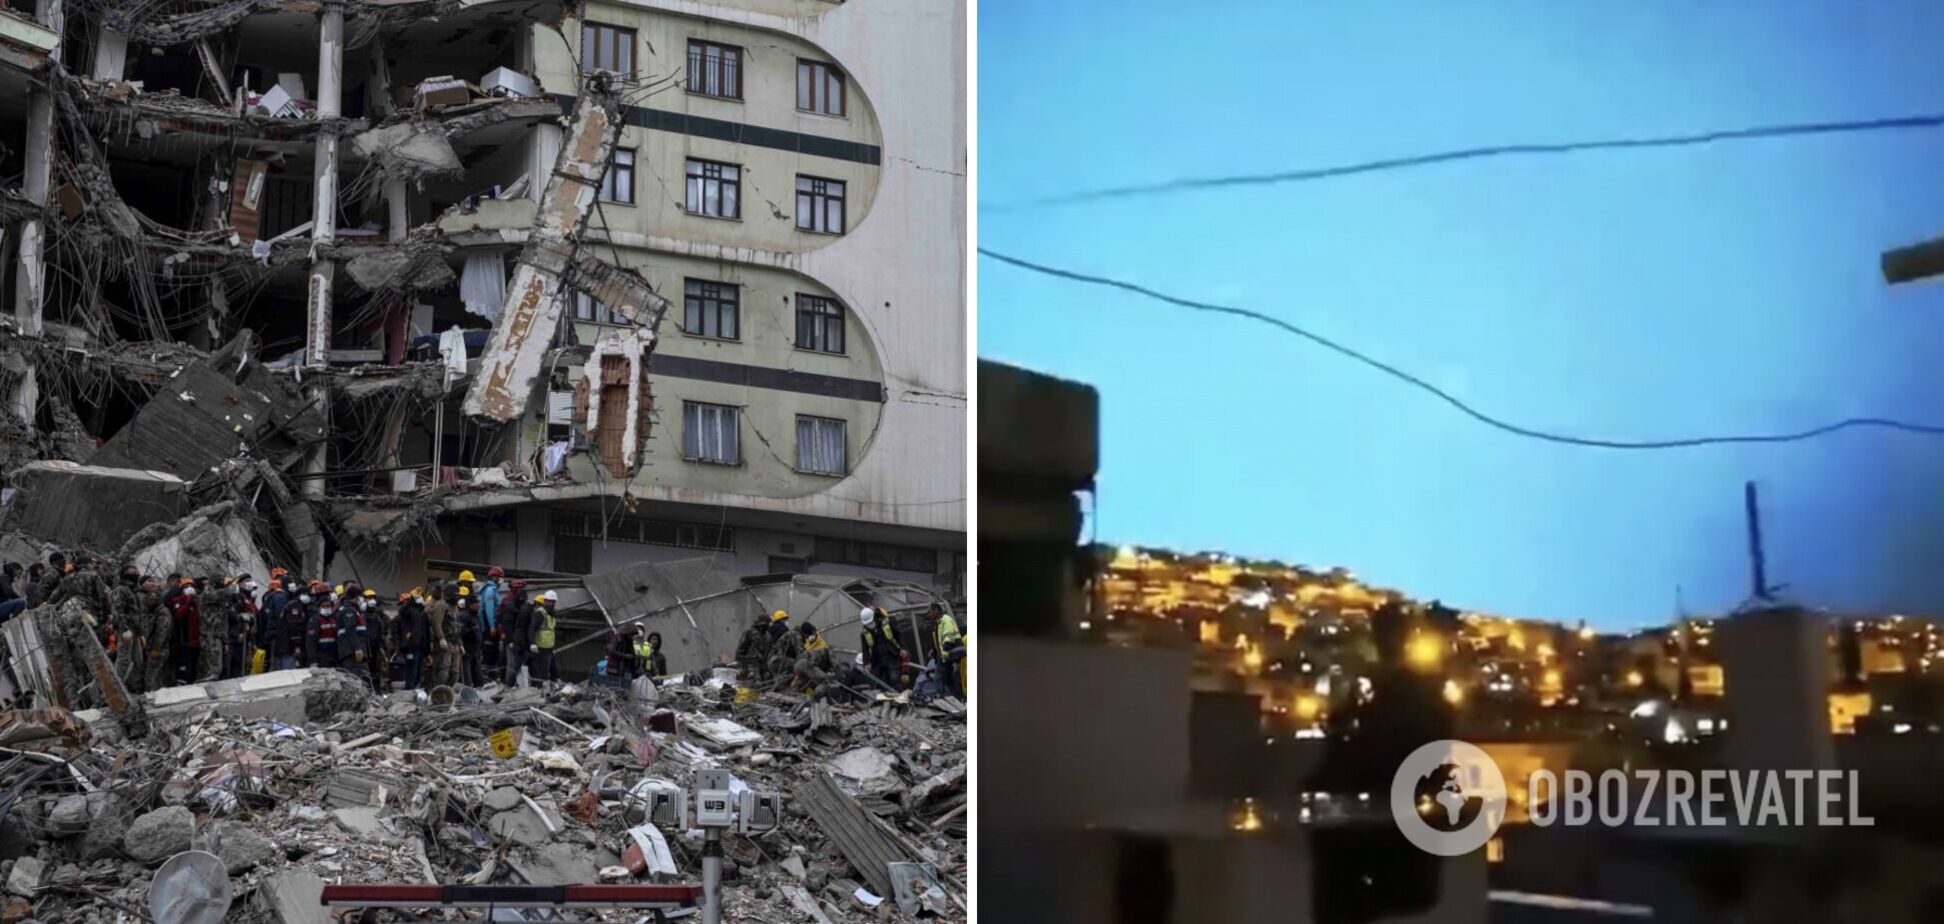 Перед началом землетрясения в Турции в небе видели странные вспышки: видео первых минут стихийного бедствия